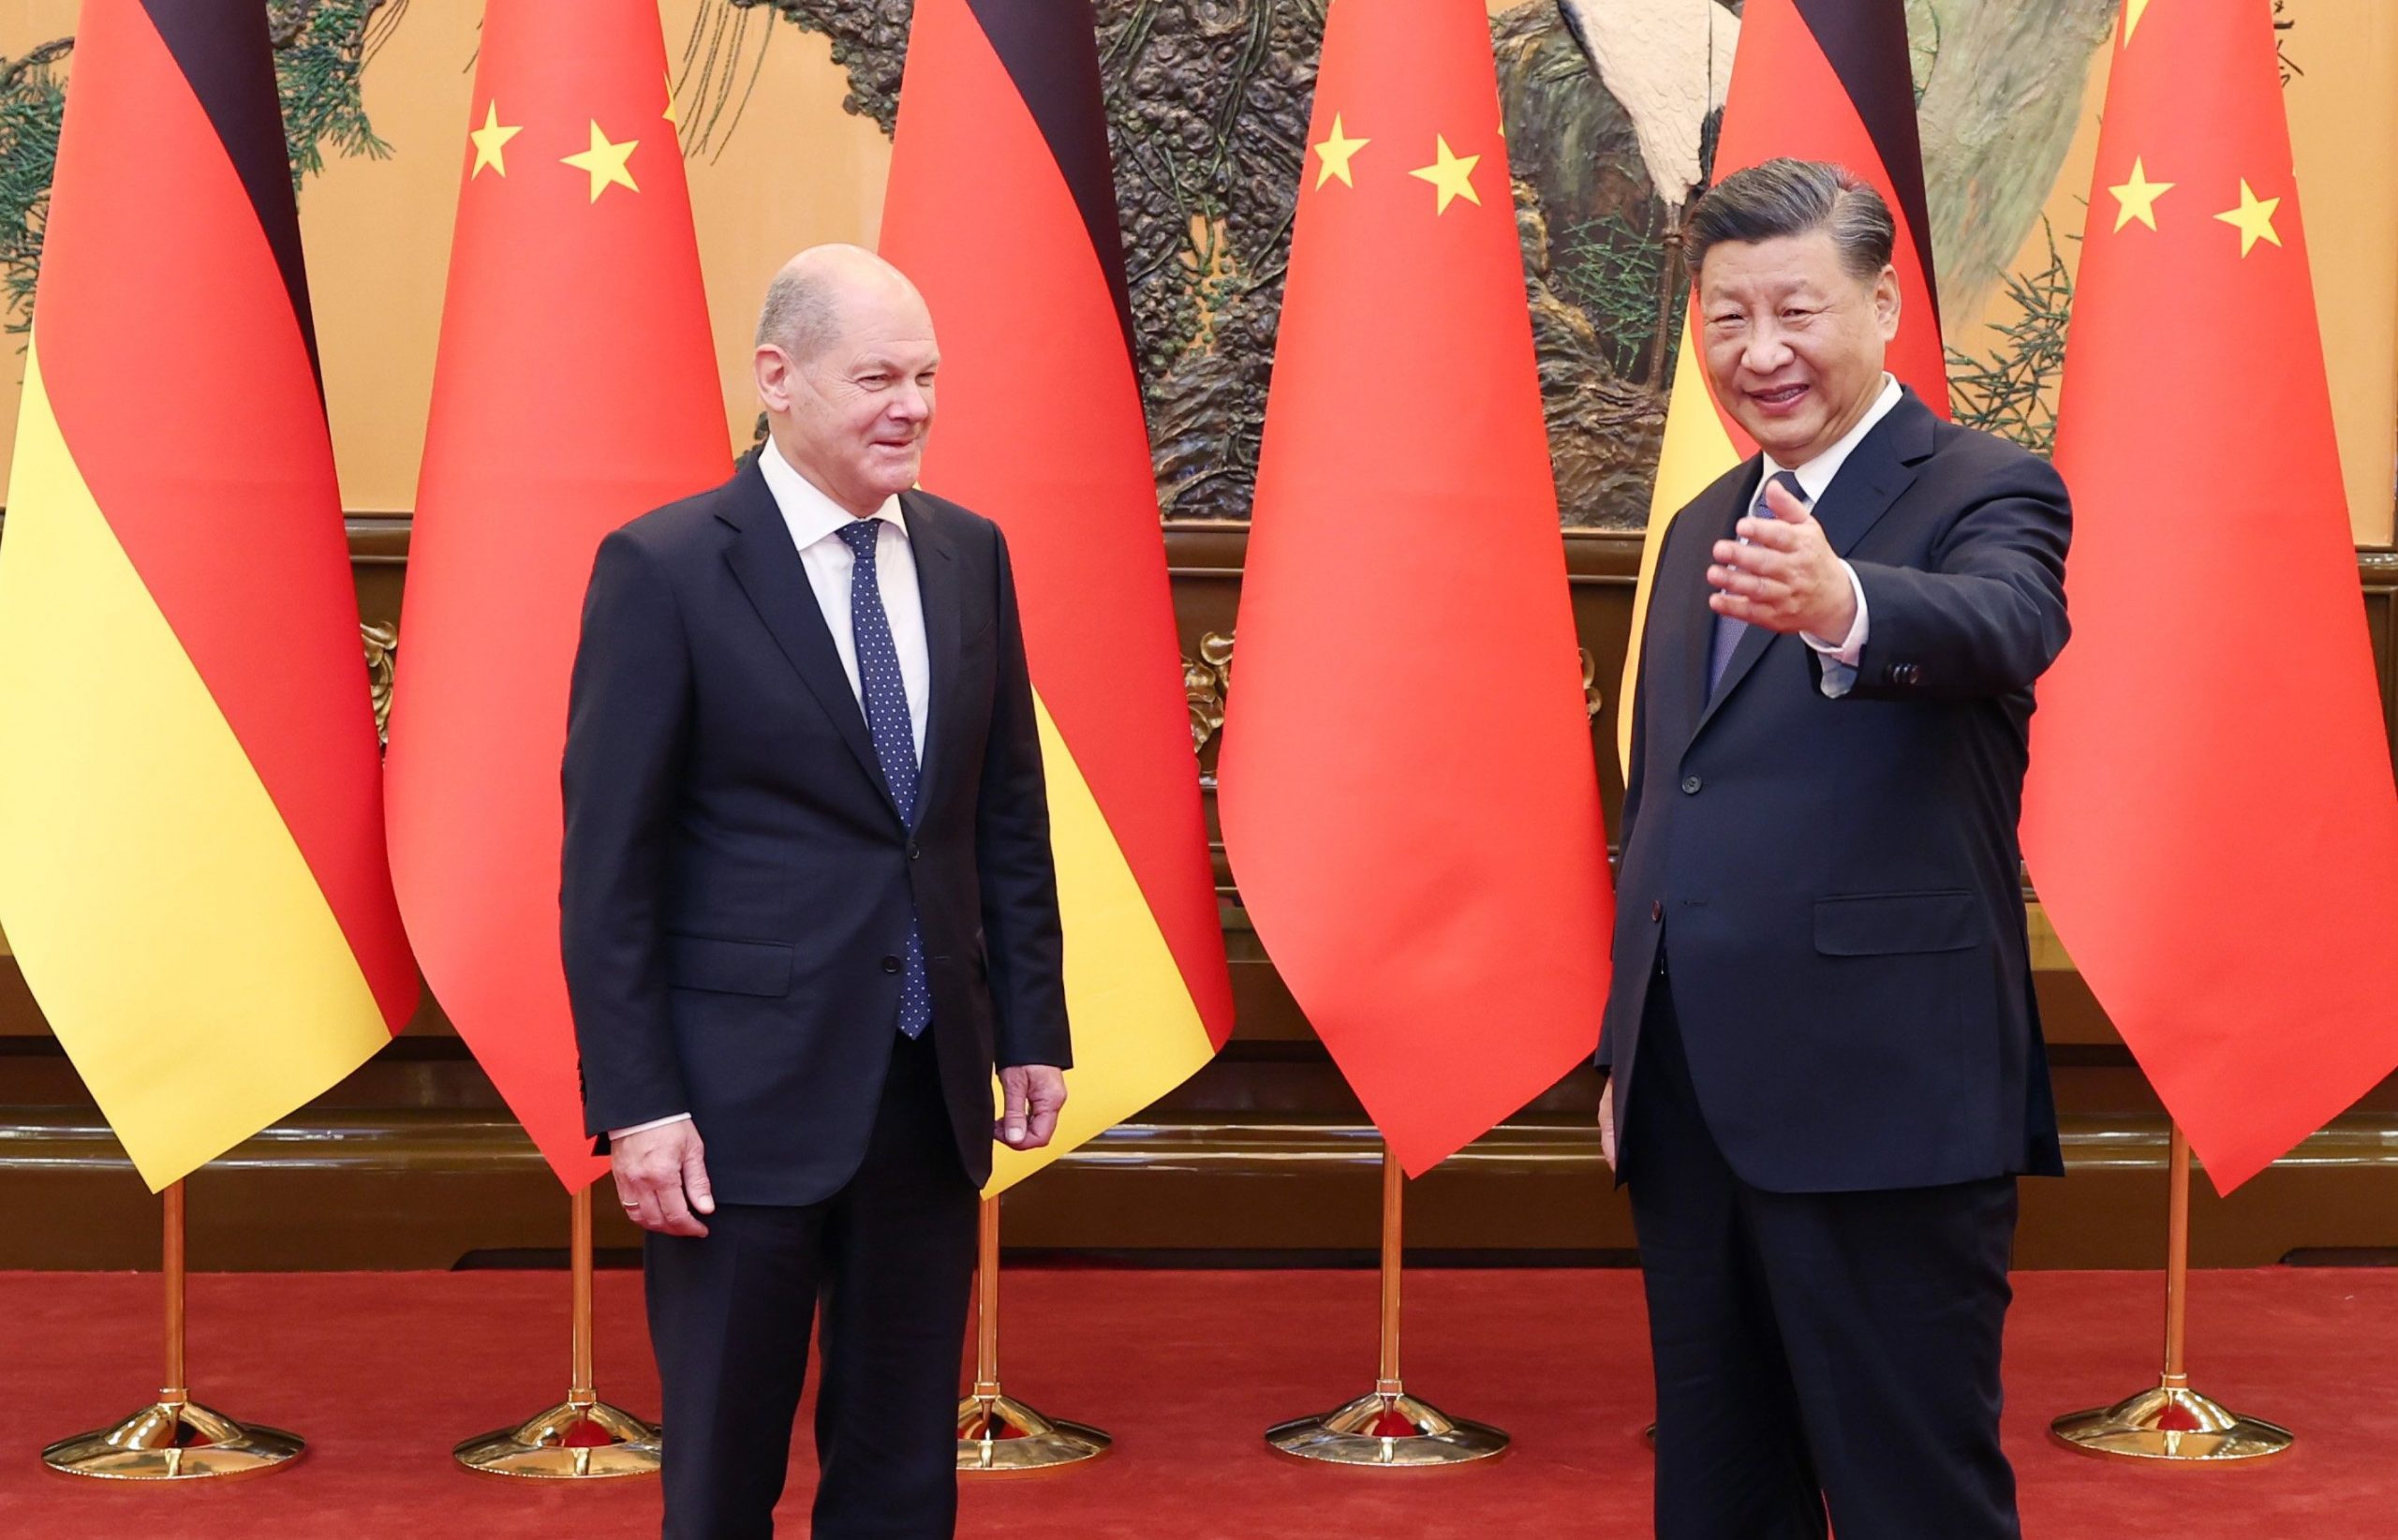 Interconnect story fracture Xi Jinping l-a primit pe Scholz cu mesajul că Germania și China ar trebui  să colaboreze mai mult în "vremuri de schimbare şi frământări". Occidentul  se teme că Berlinul ar putea înlocui